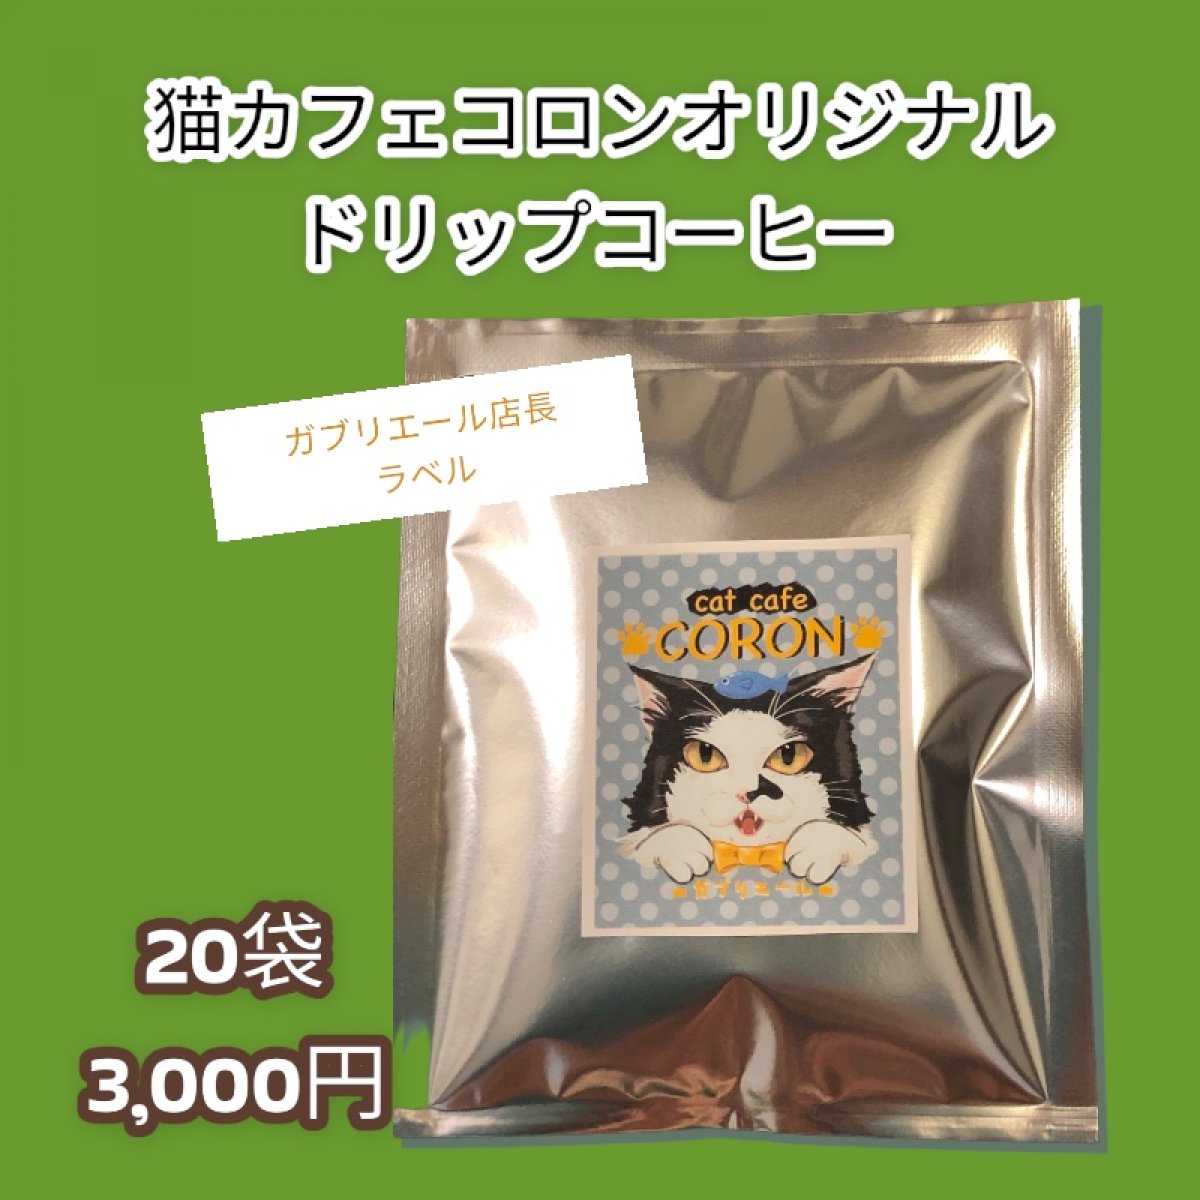 【猫カフェコロン応援ドリップパックコーヒー20袋】美味しい応援◆定期購入あり◆挽きたてをパックしてお届けです